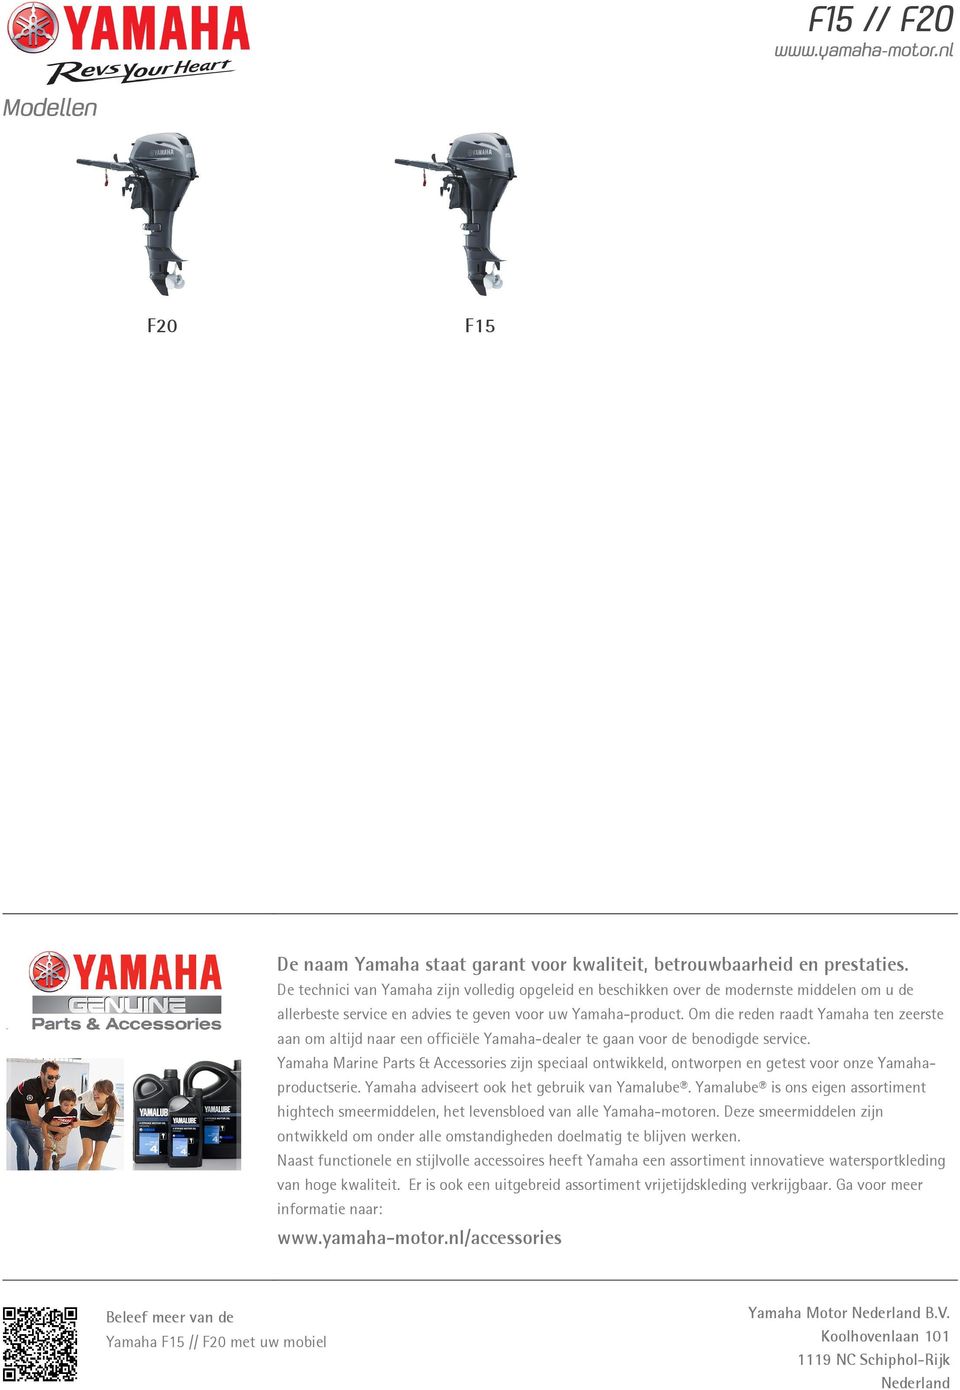 Om die reden raadt Yamaha ten zeerste aan om altijd naar een officiële Yamaha-dealer te gaan voor de benodigde service.